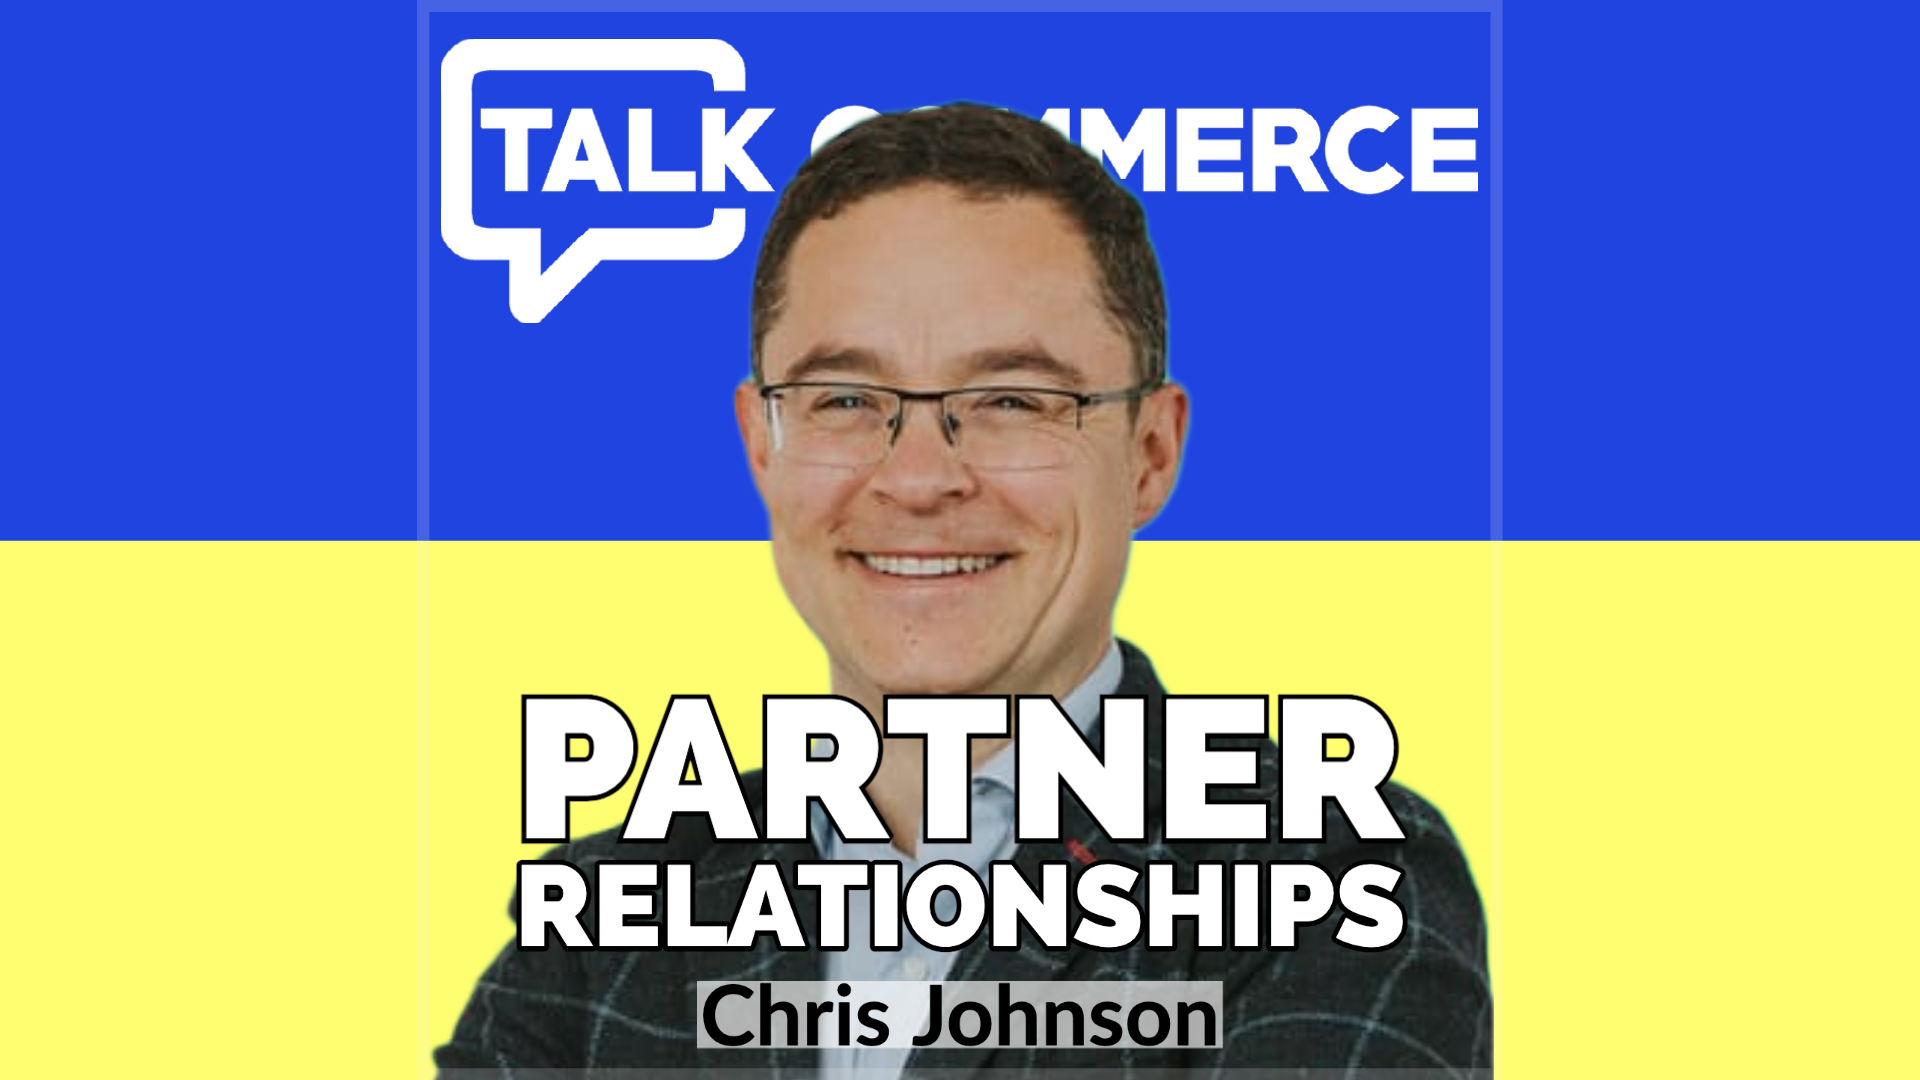 Talk-Commerce Chris Johnson